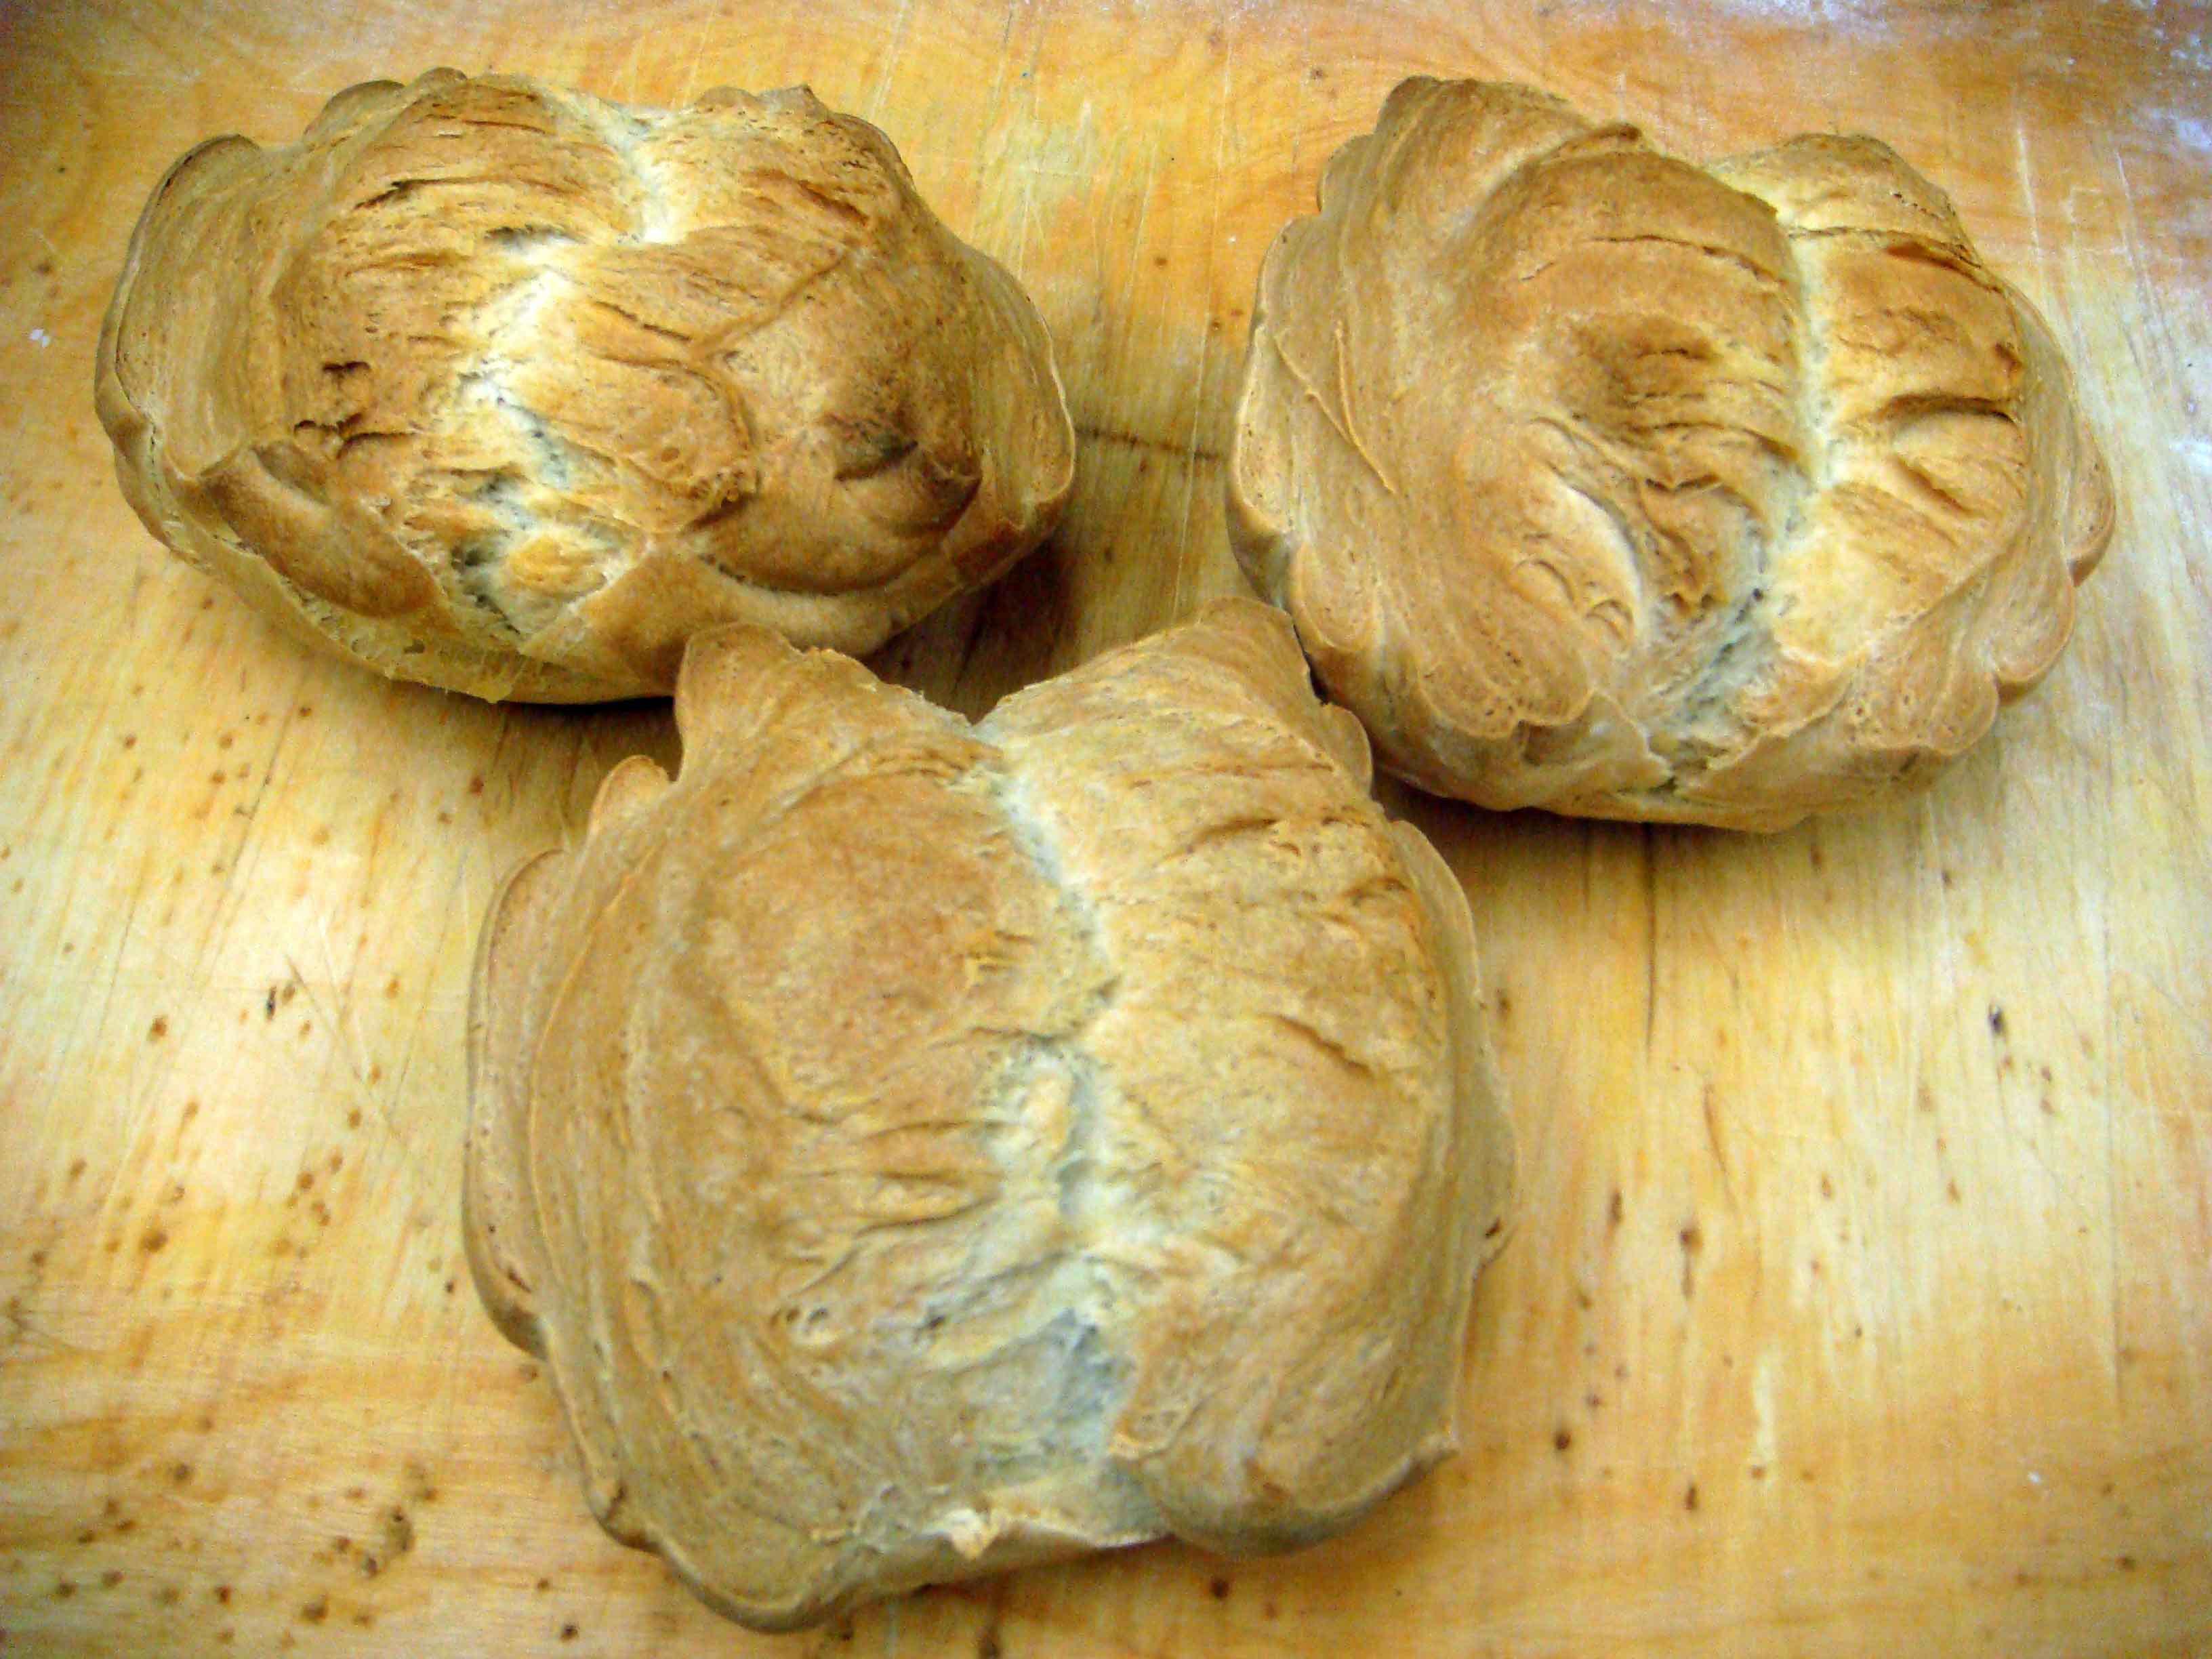 lamé di pane con lama fissa per pane francese Vendite Pazze Strumento per segnare la pasta di pane lamé 